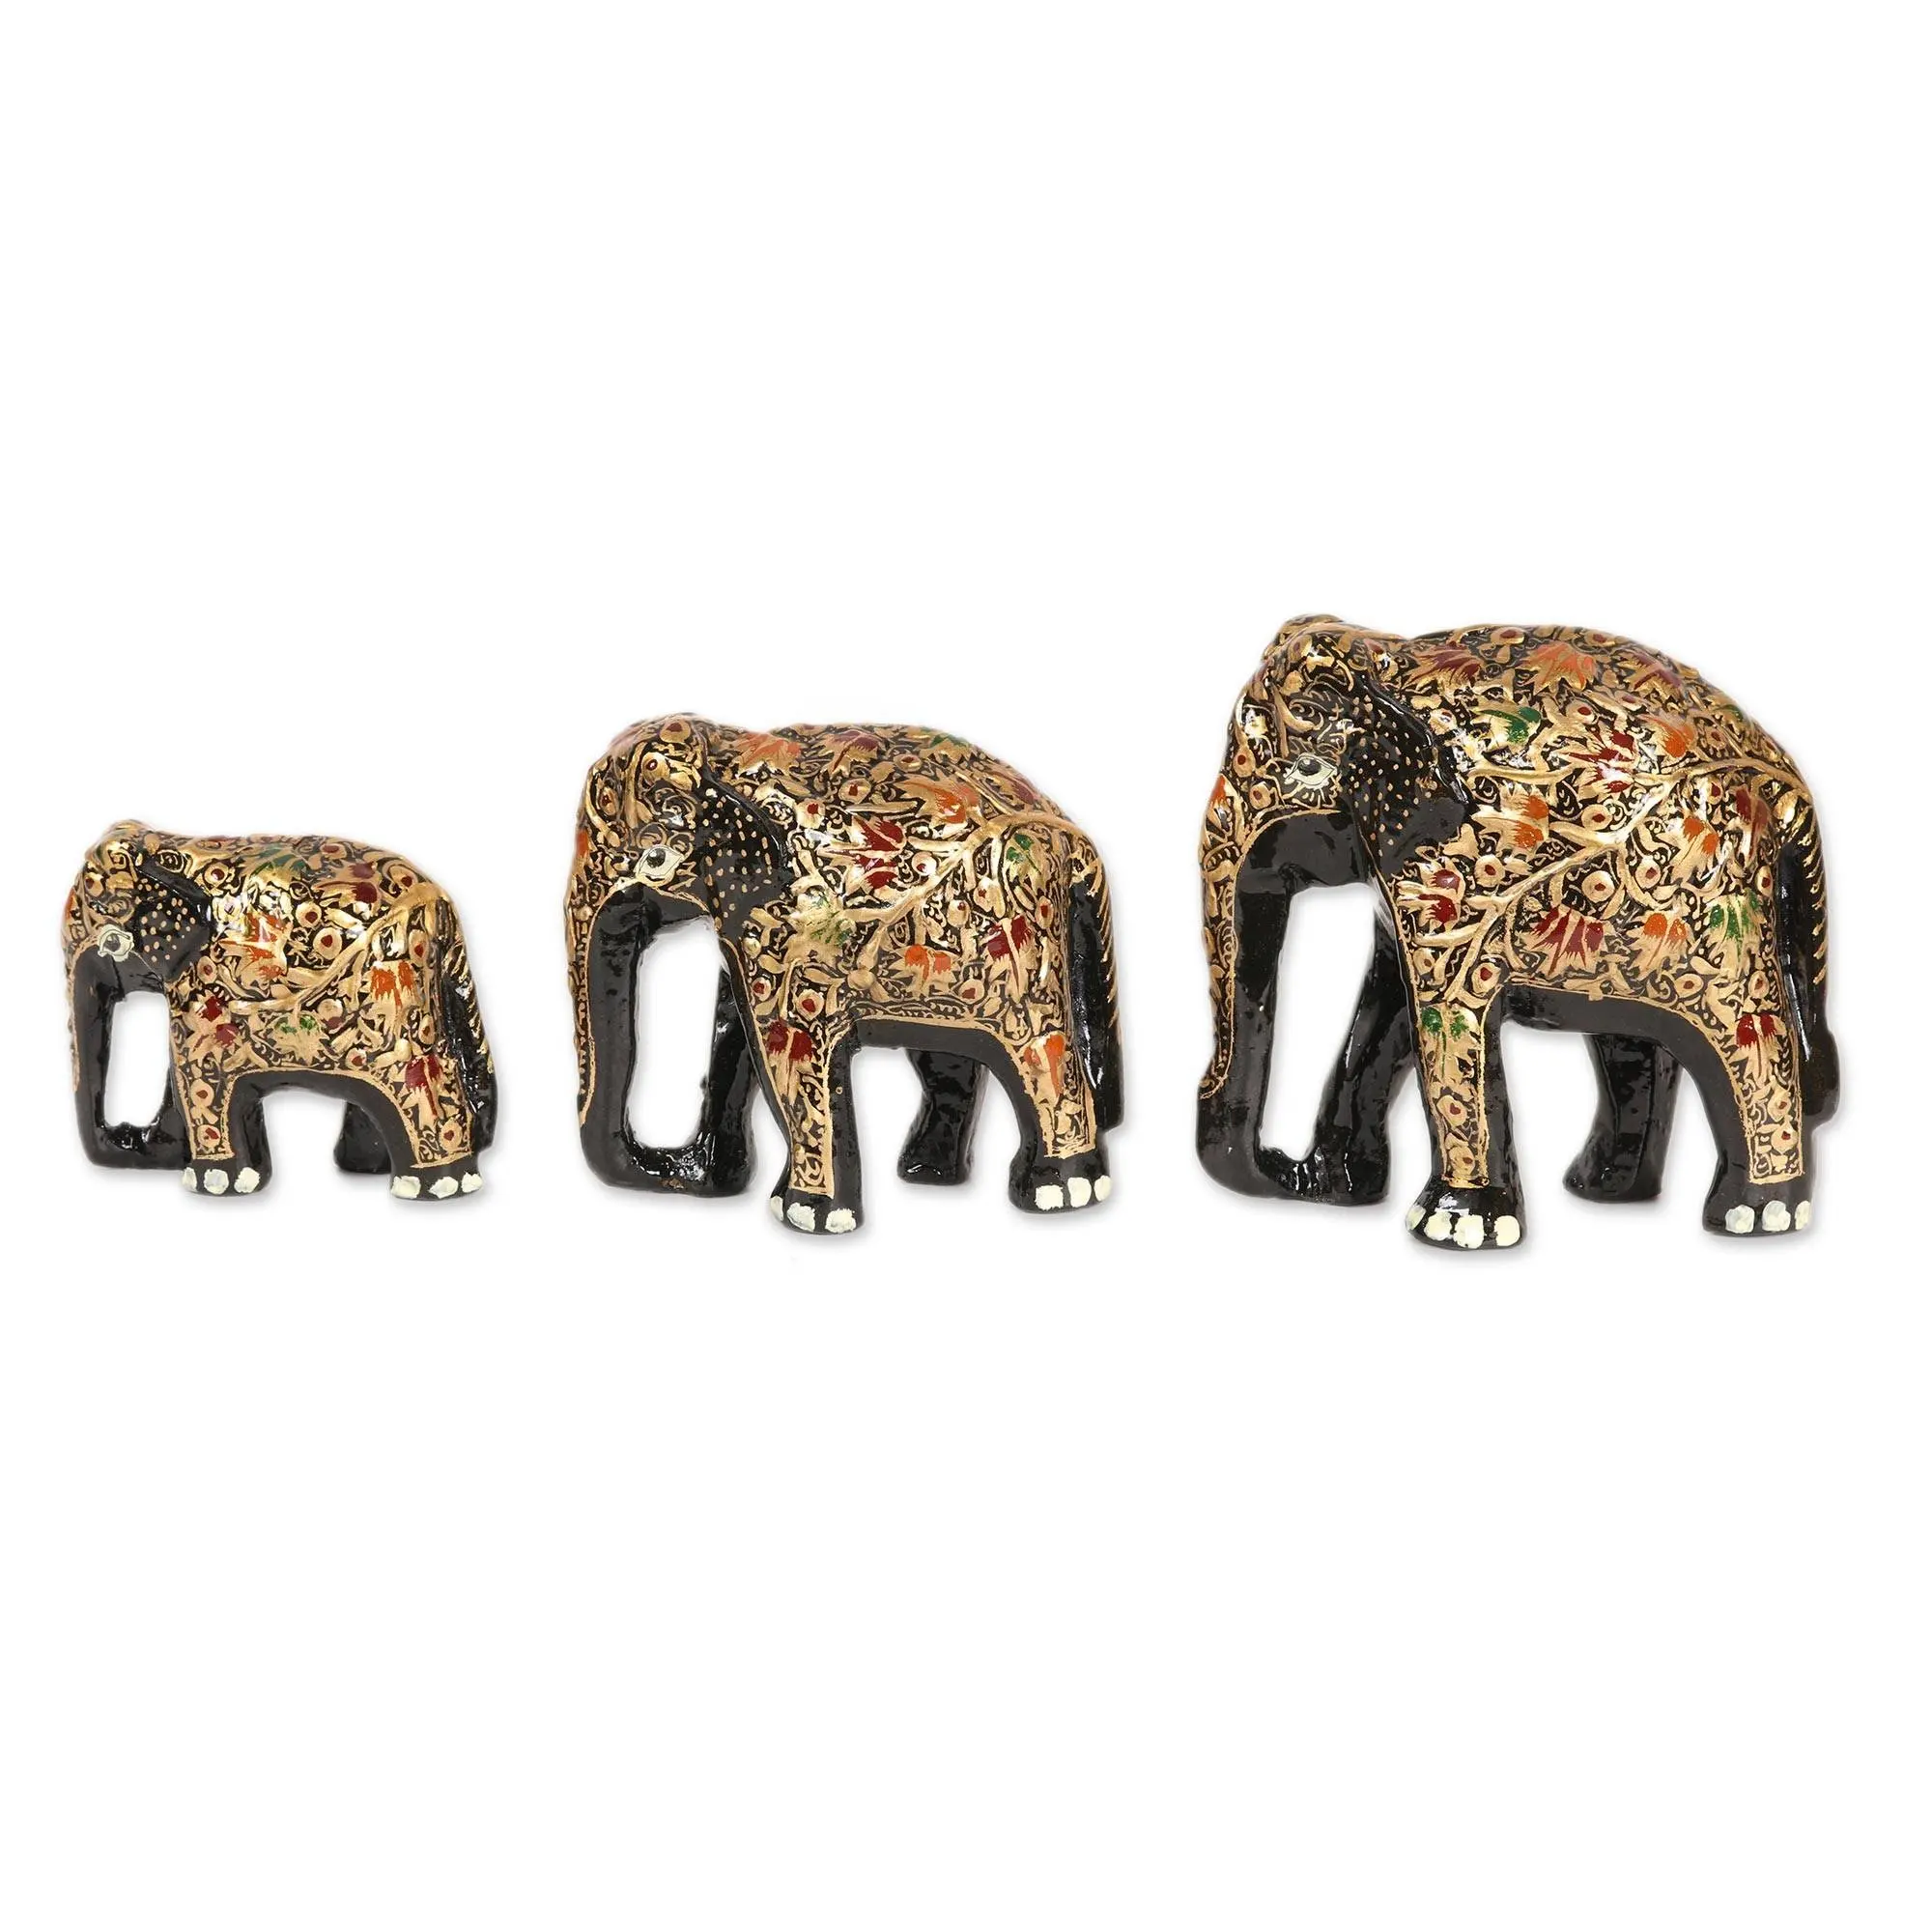 ครอบครัวช้างวาดด้วยมือจากอินเดียชุดครอบครัวช้างทำด้วยมือ3ช้าง